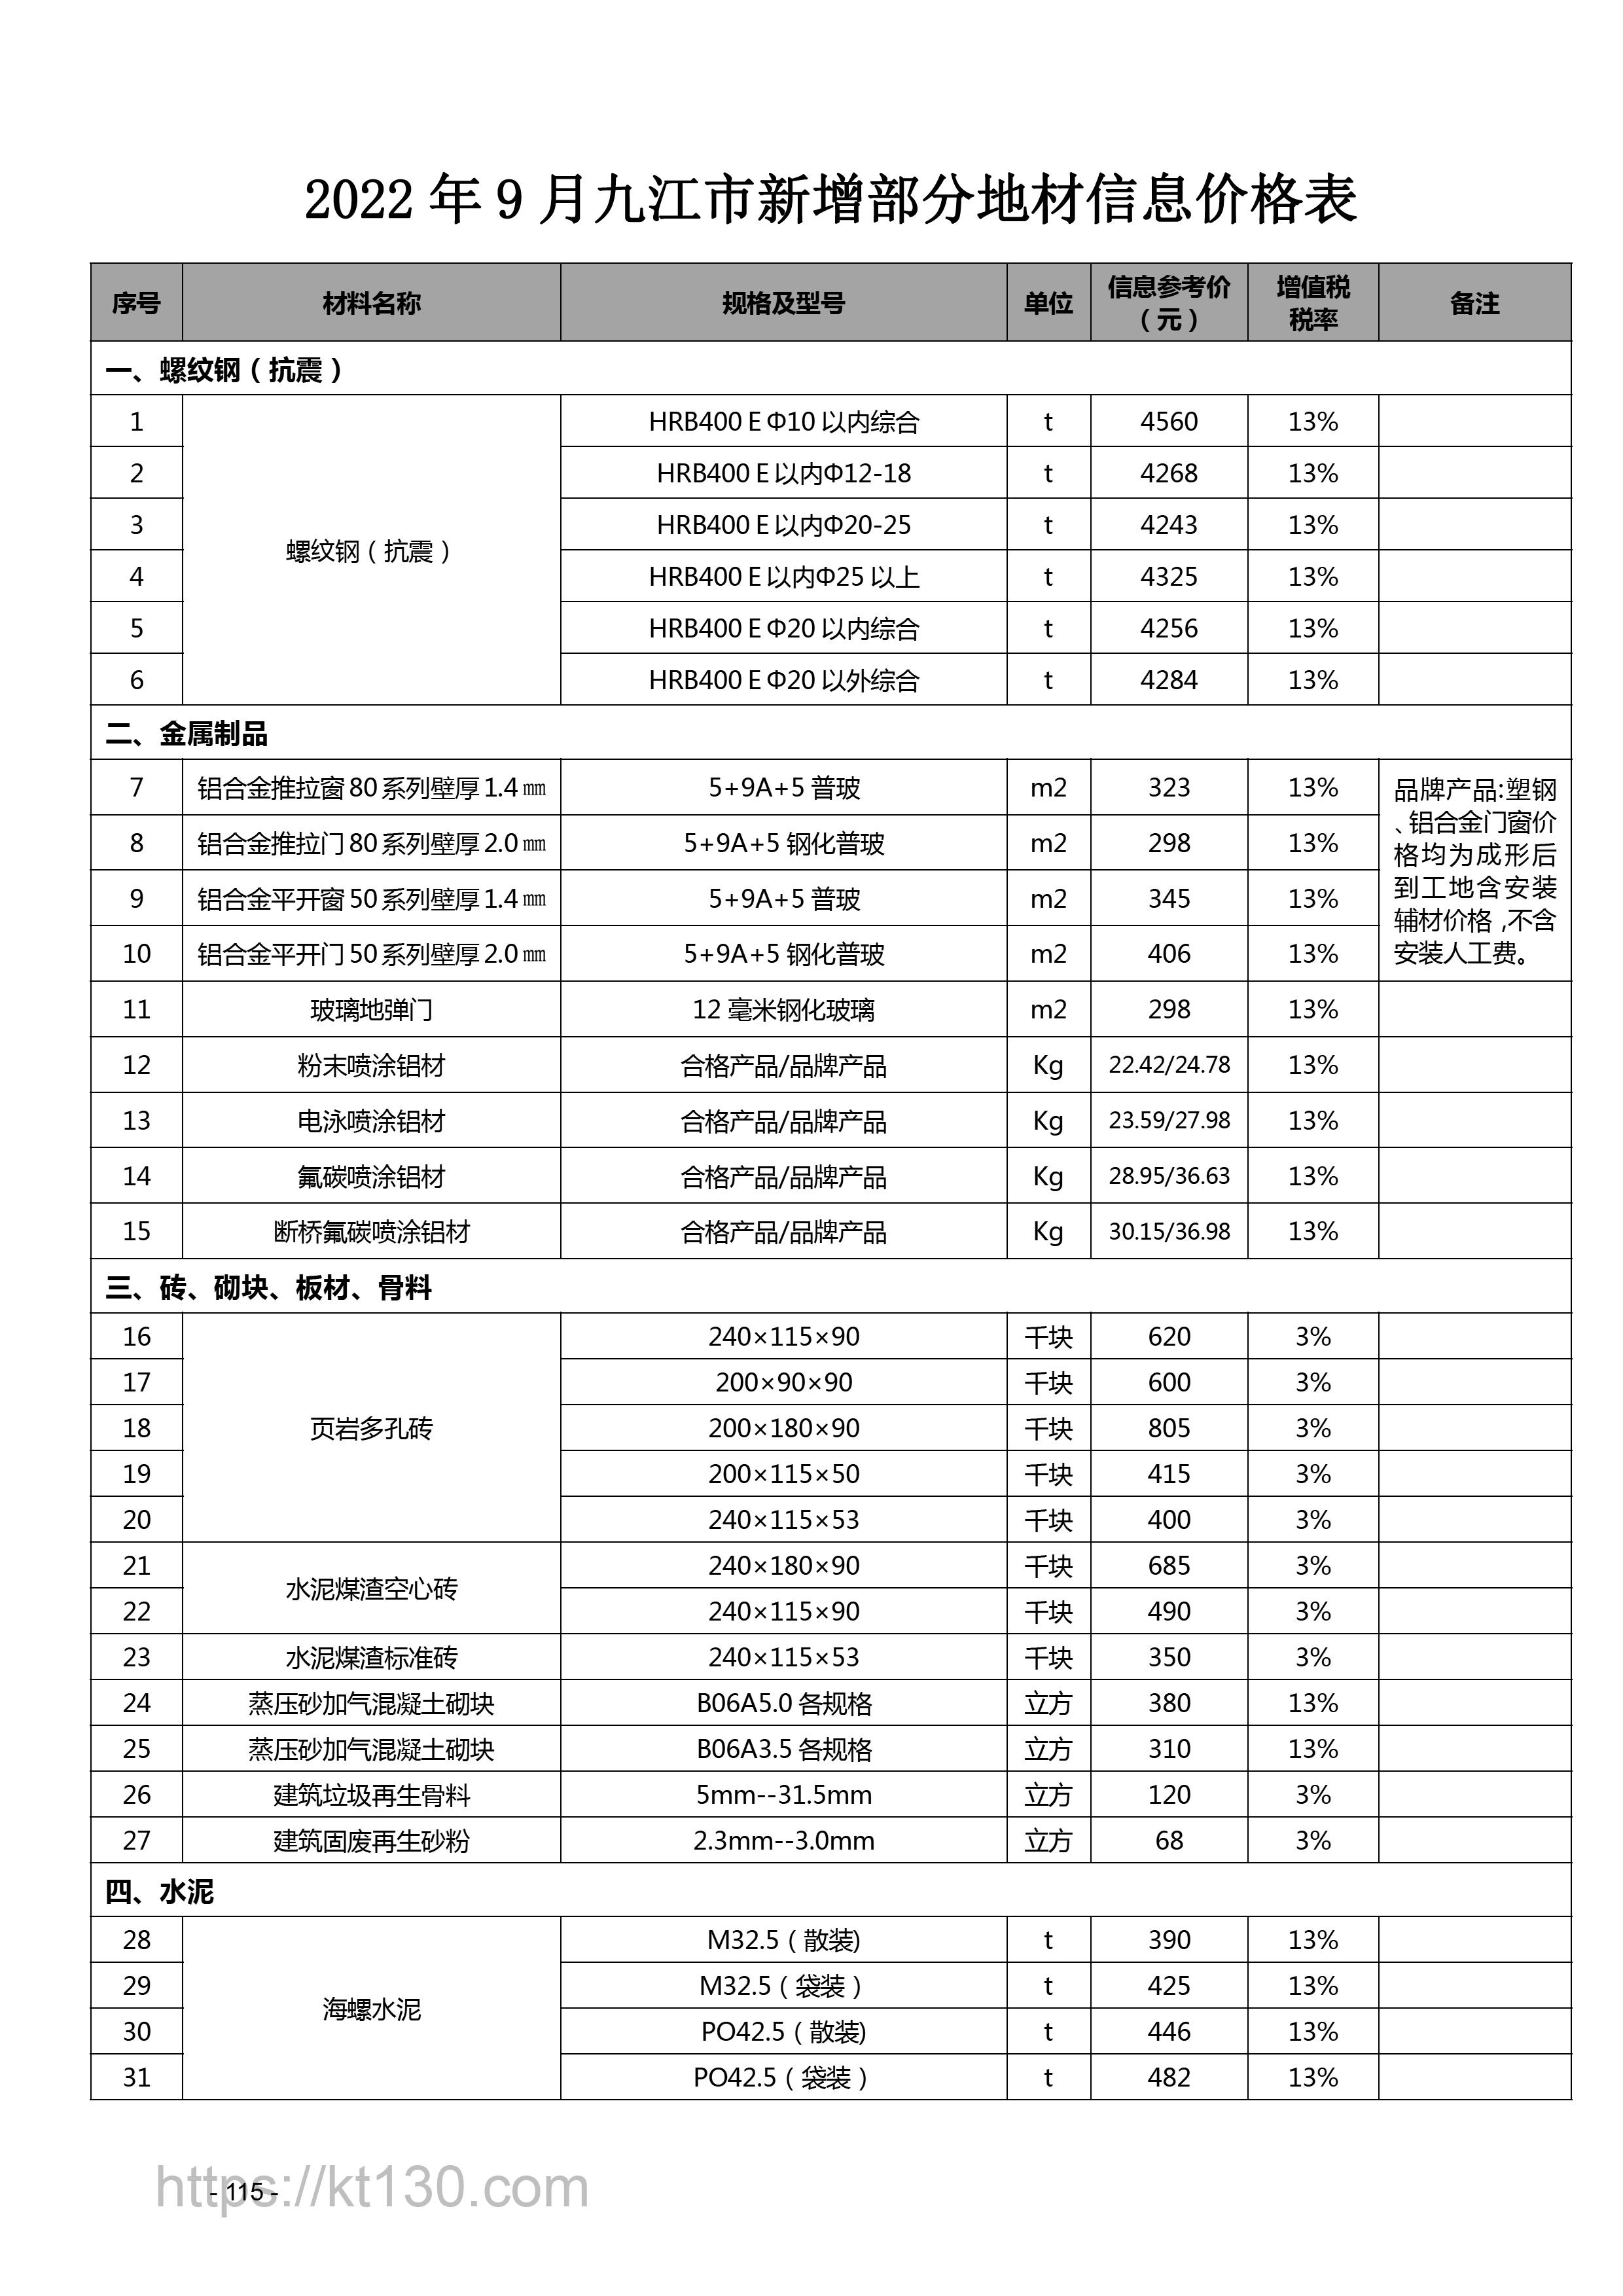 江西省2022年9月建筑材料价_螺纹钢_56656